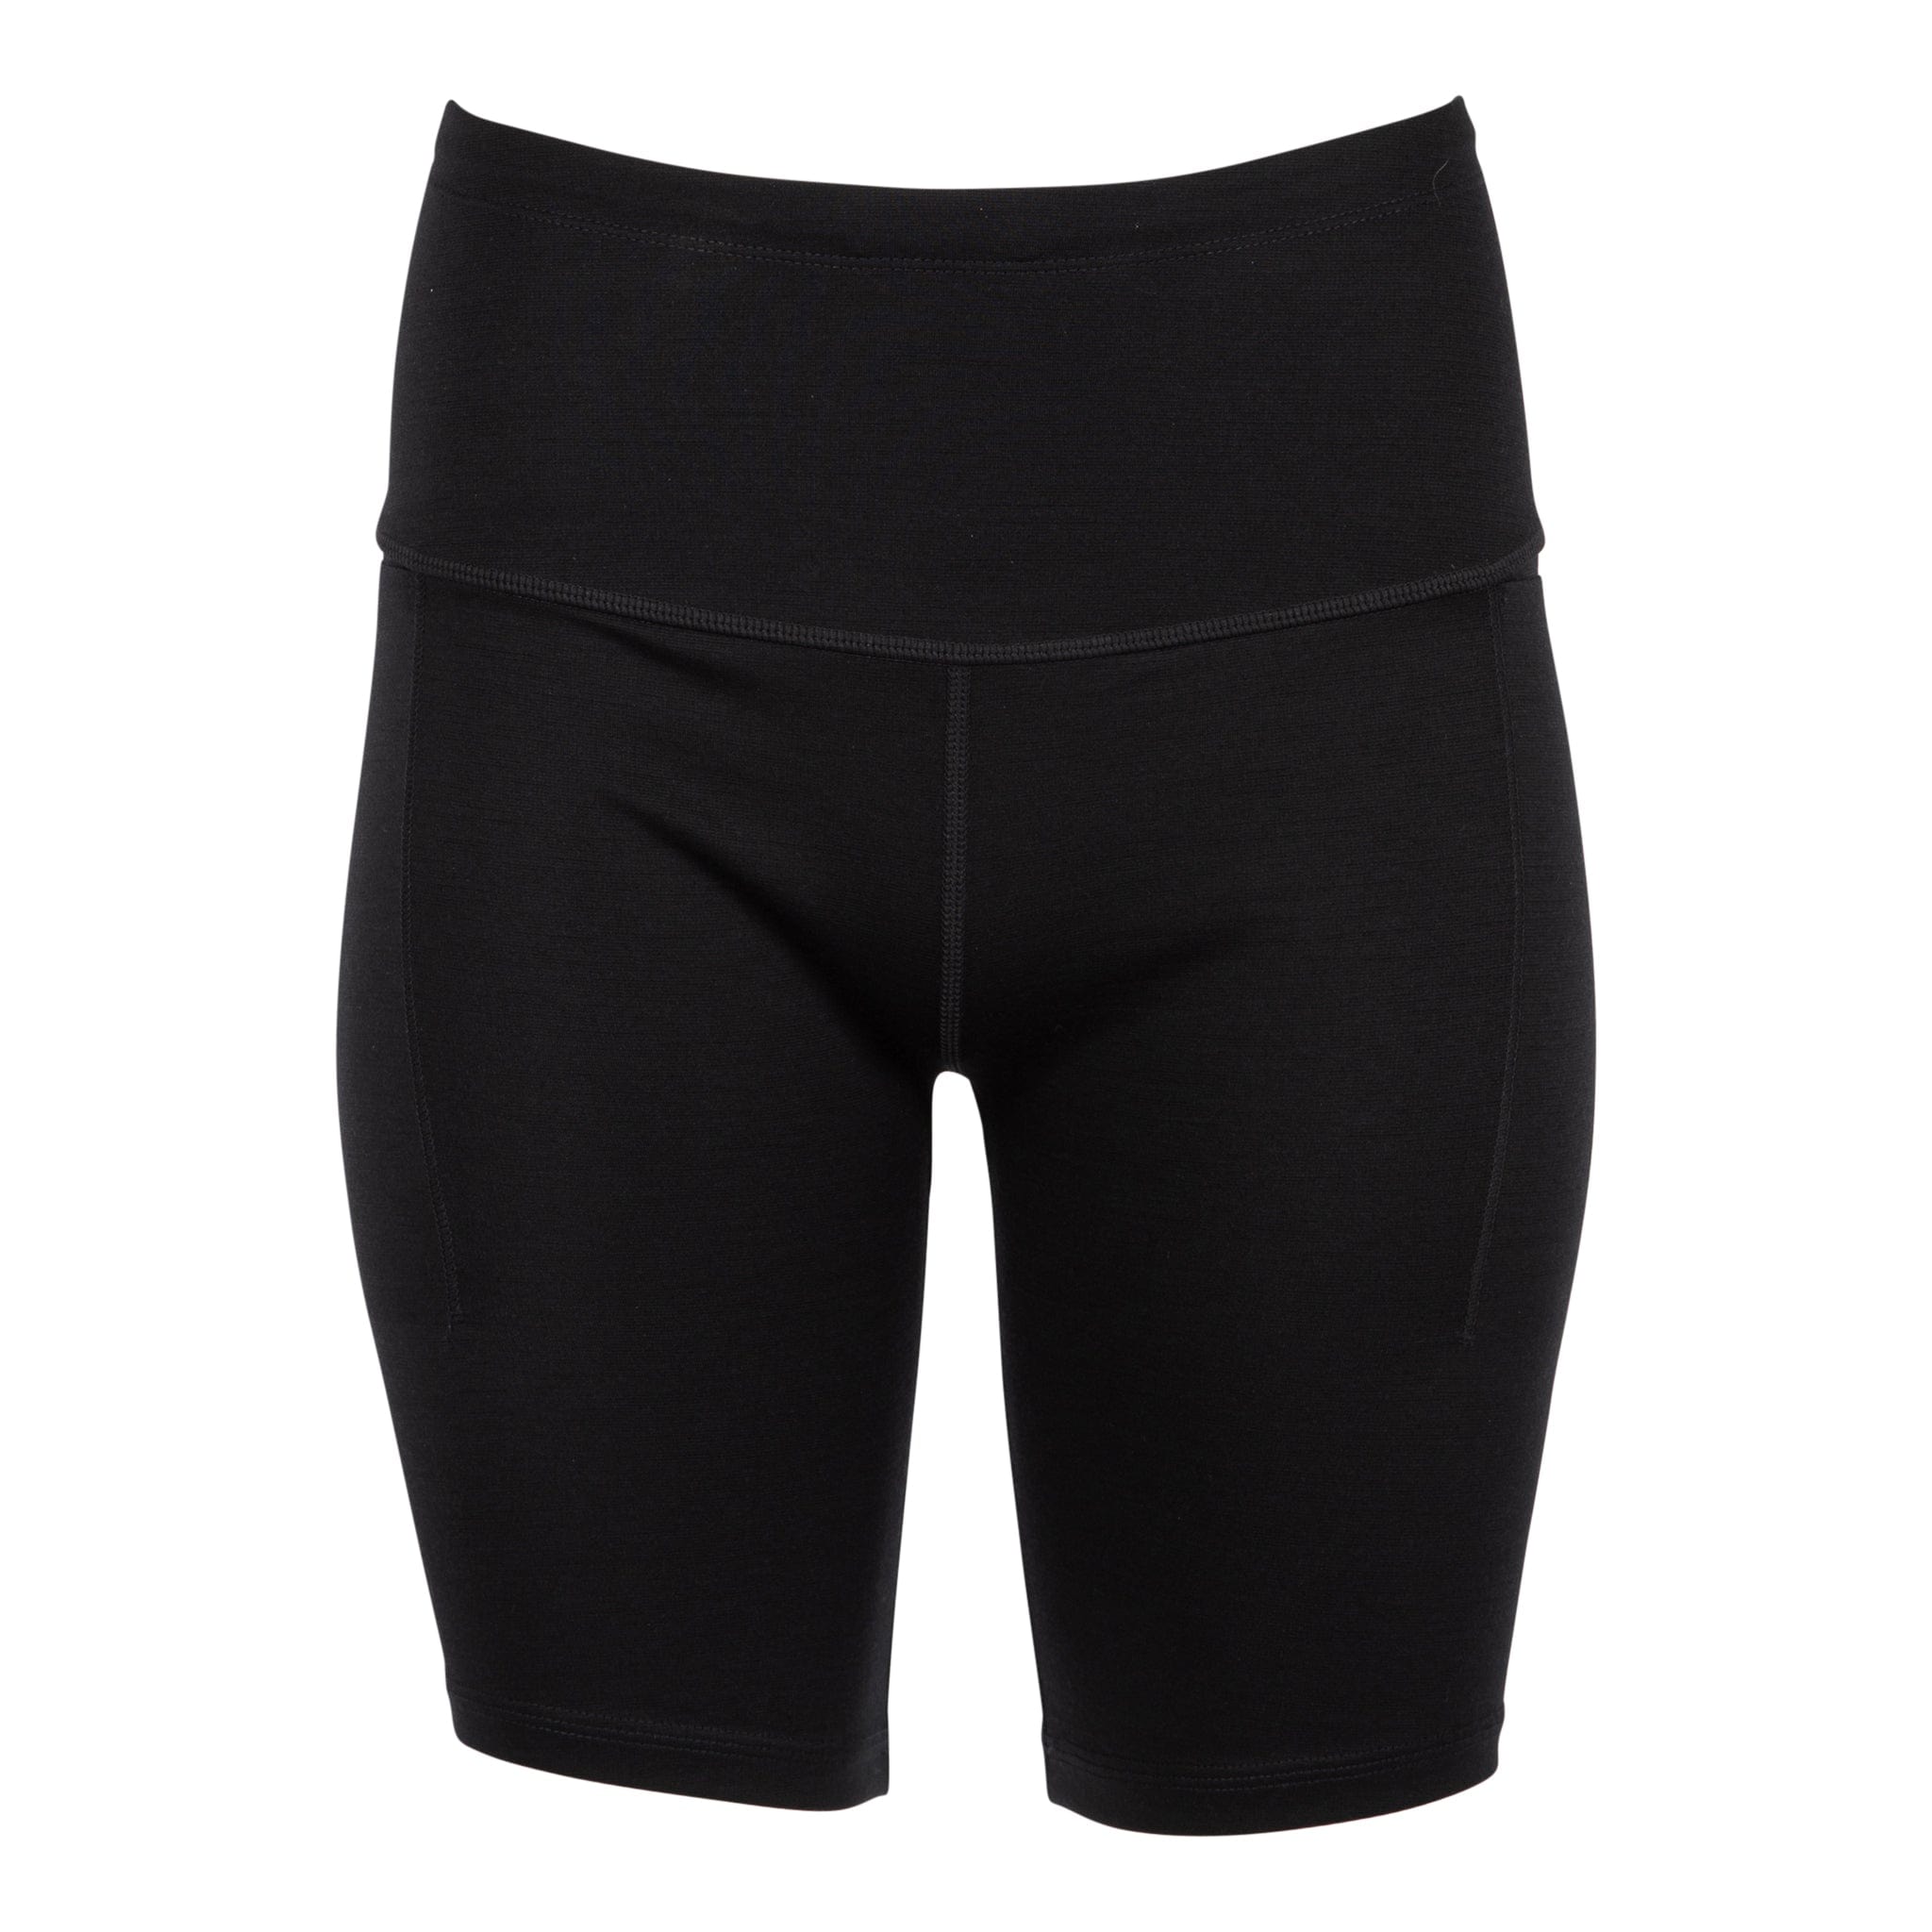 Women's Merino Bike Shorts with Pockets - 8 – Ridge Merino